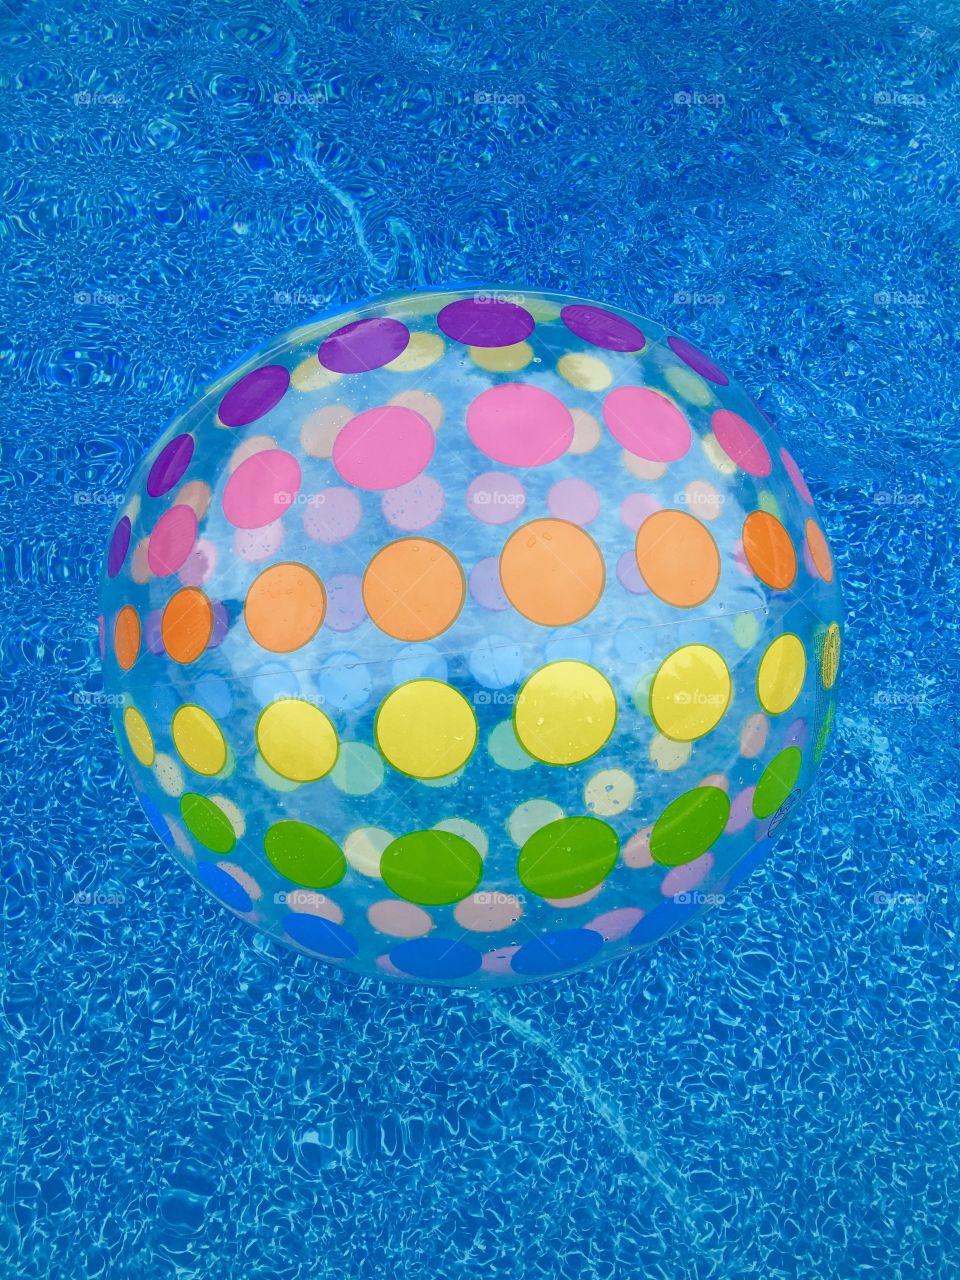 High angle view of colorful ball